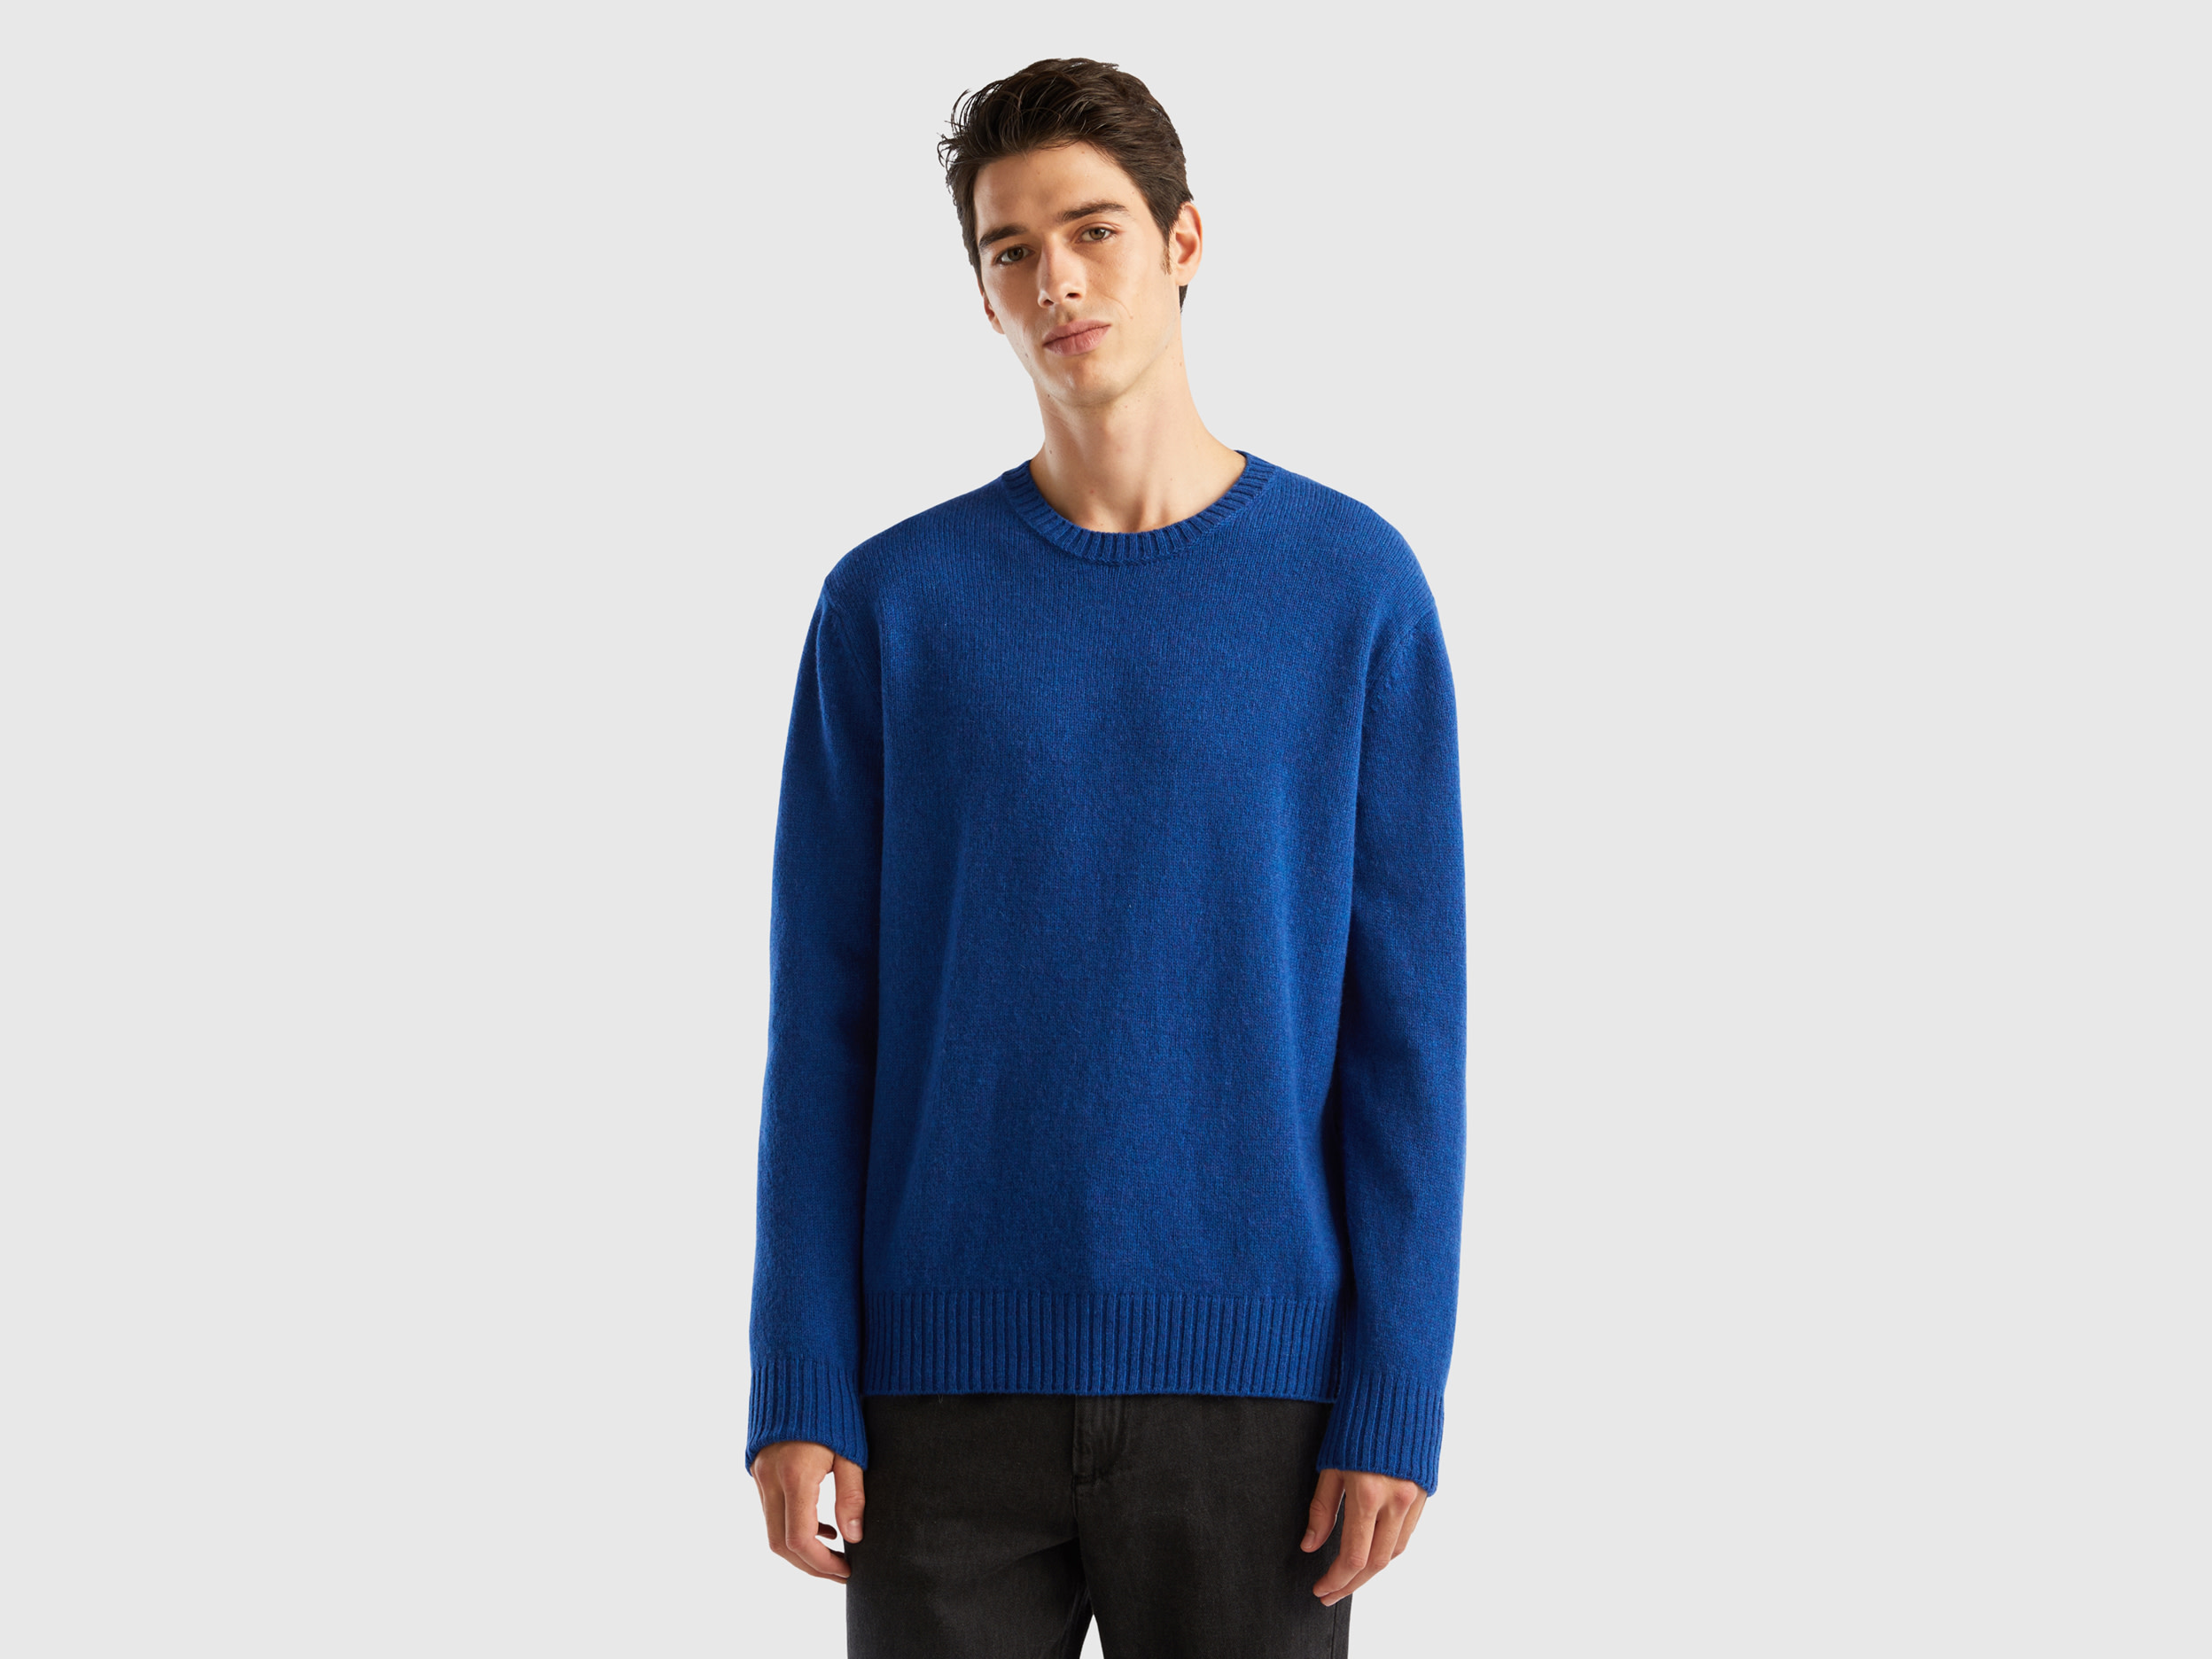 Benetton, Sweater In Shetland Wool, size XXL, Bright Blue, Men